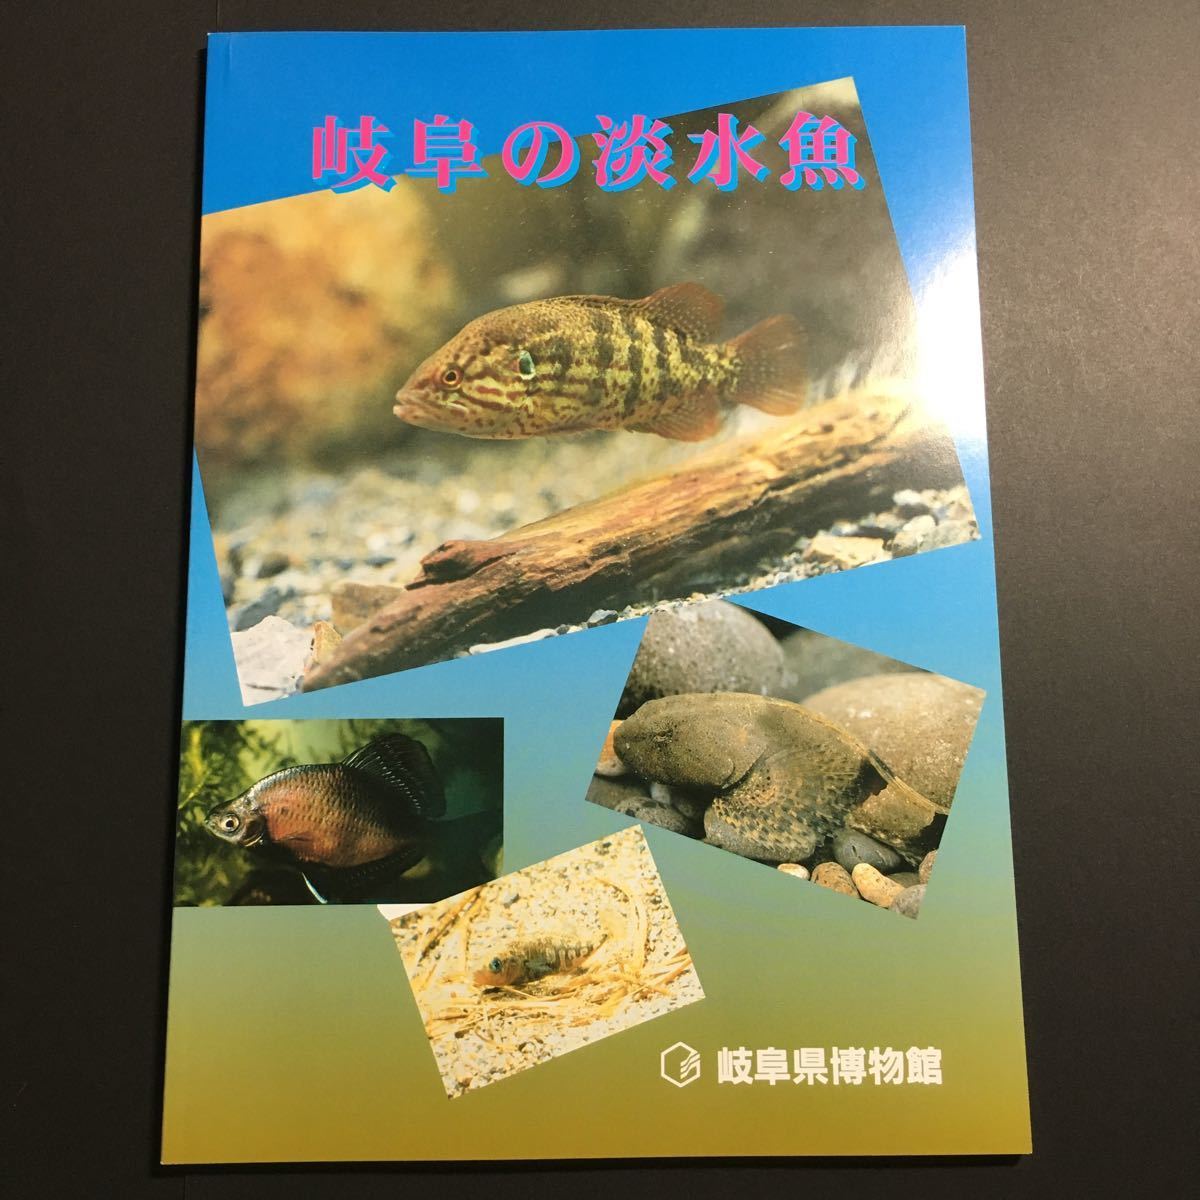 [ бесплатная доставка ] Gifu. пресноводная рыба альбом с иллюстрациями * натуральный память предмет .... вид . внезапный вид редкий вид река . сырой . форма жизнь минут ткань окружающая среда вне . рыба растения насекомое окаменелость Gifu префектура 